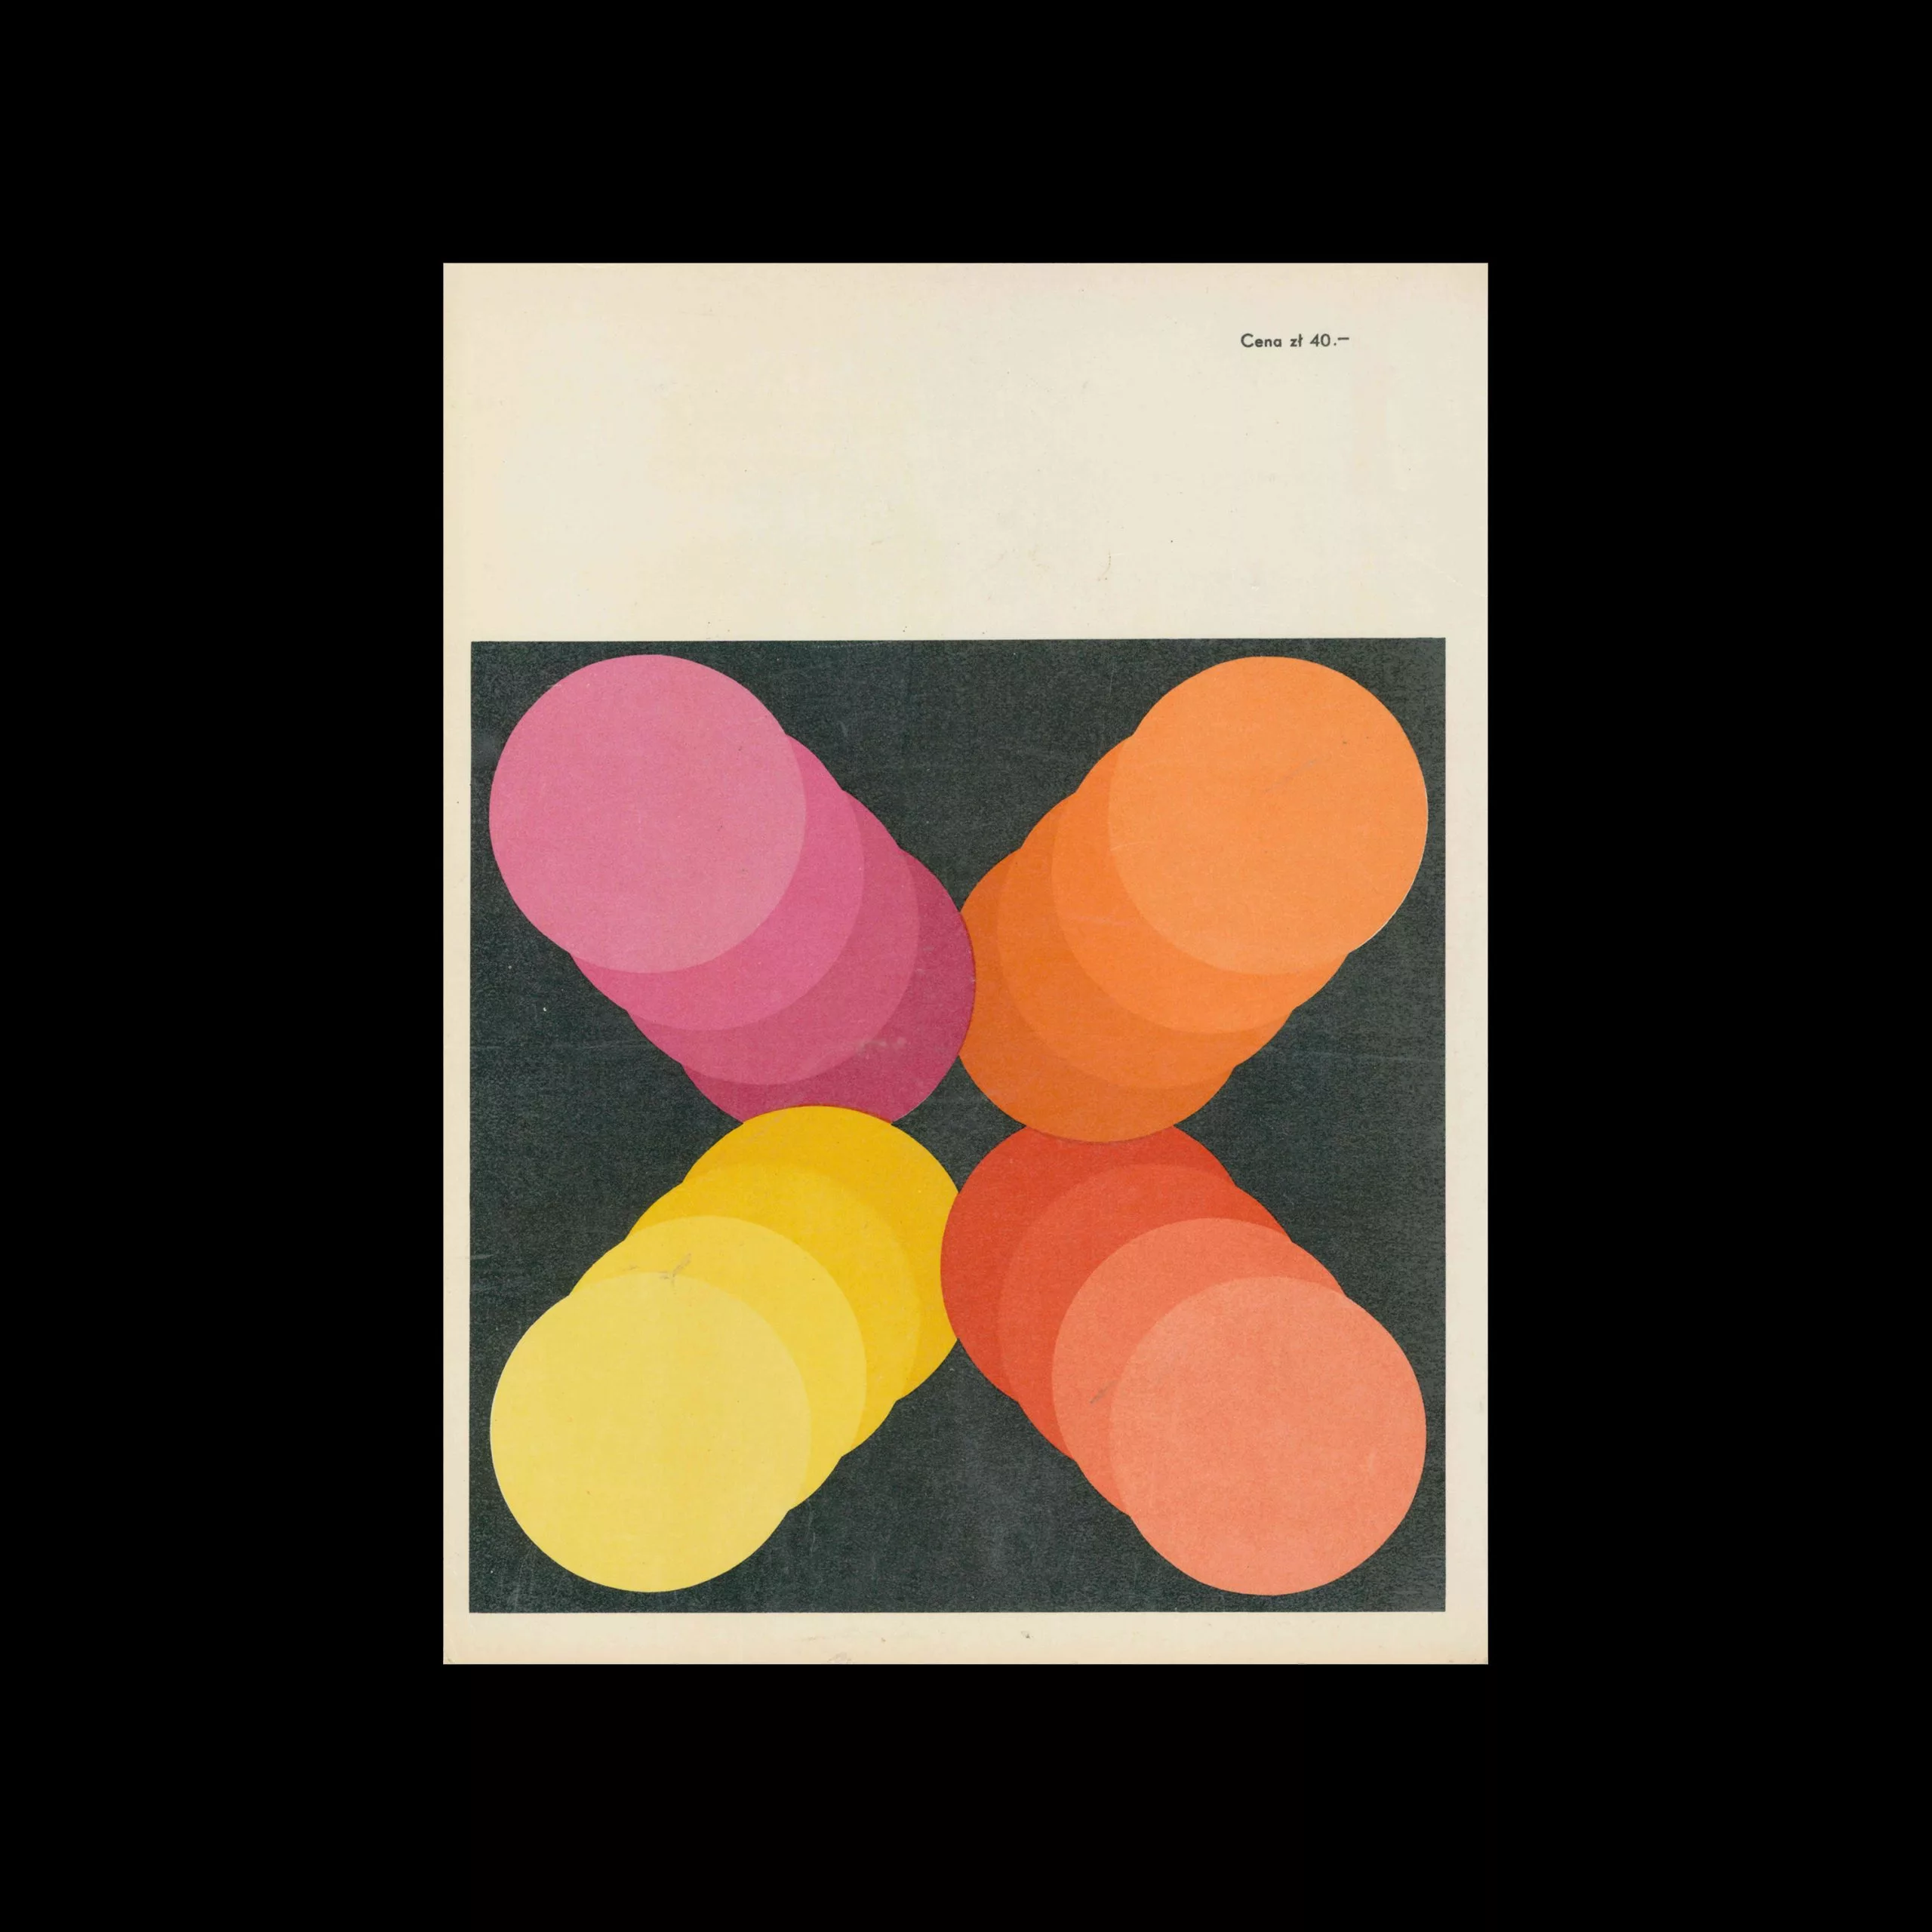 Projekt 84, 5, 1971. Cover design by Aleksandra Jachtoma